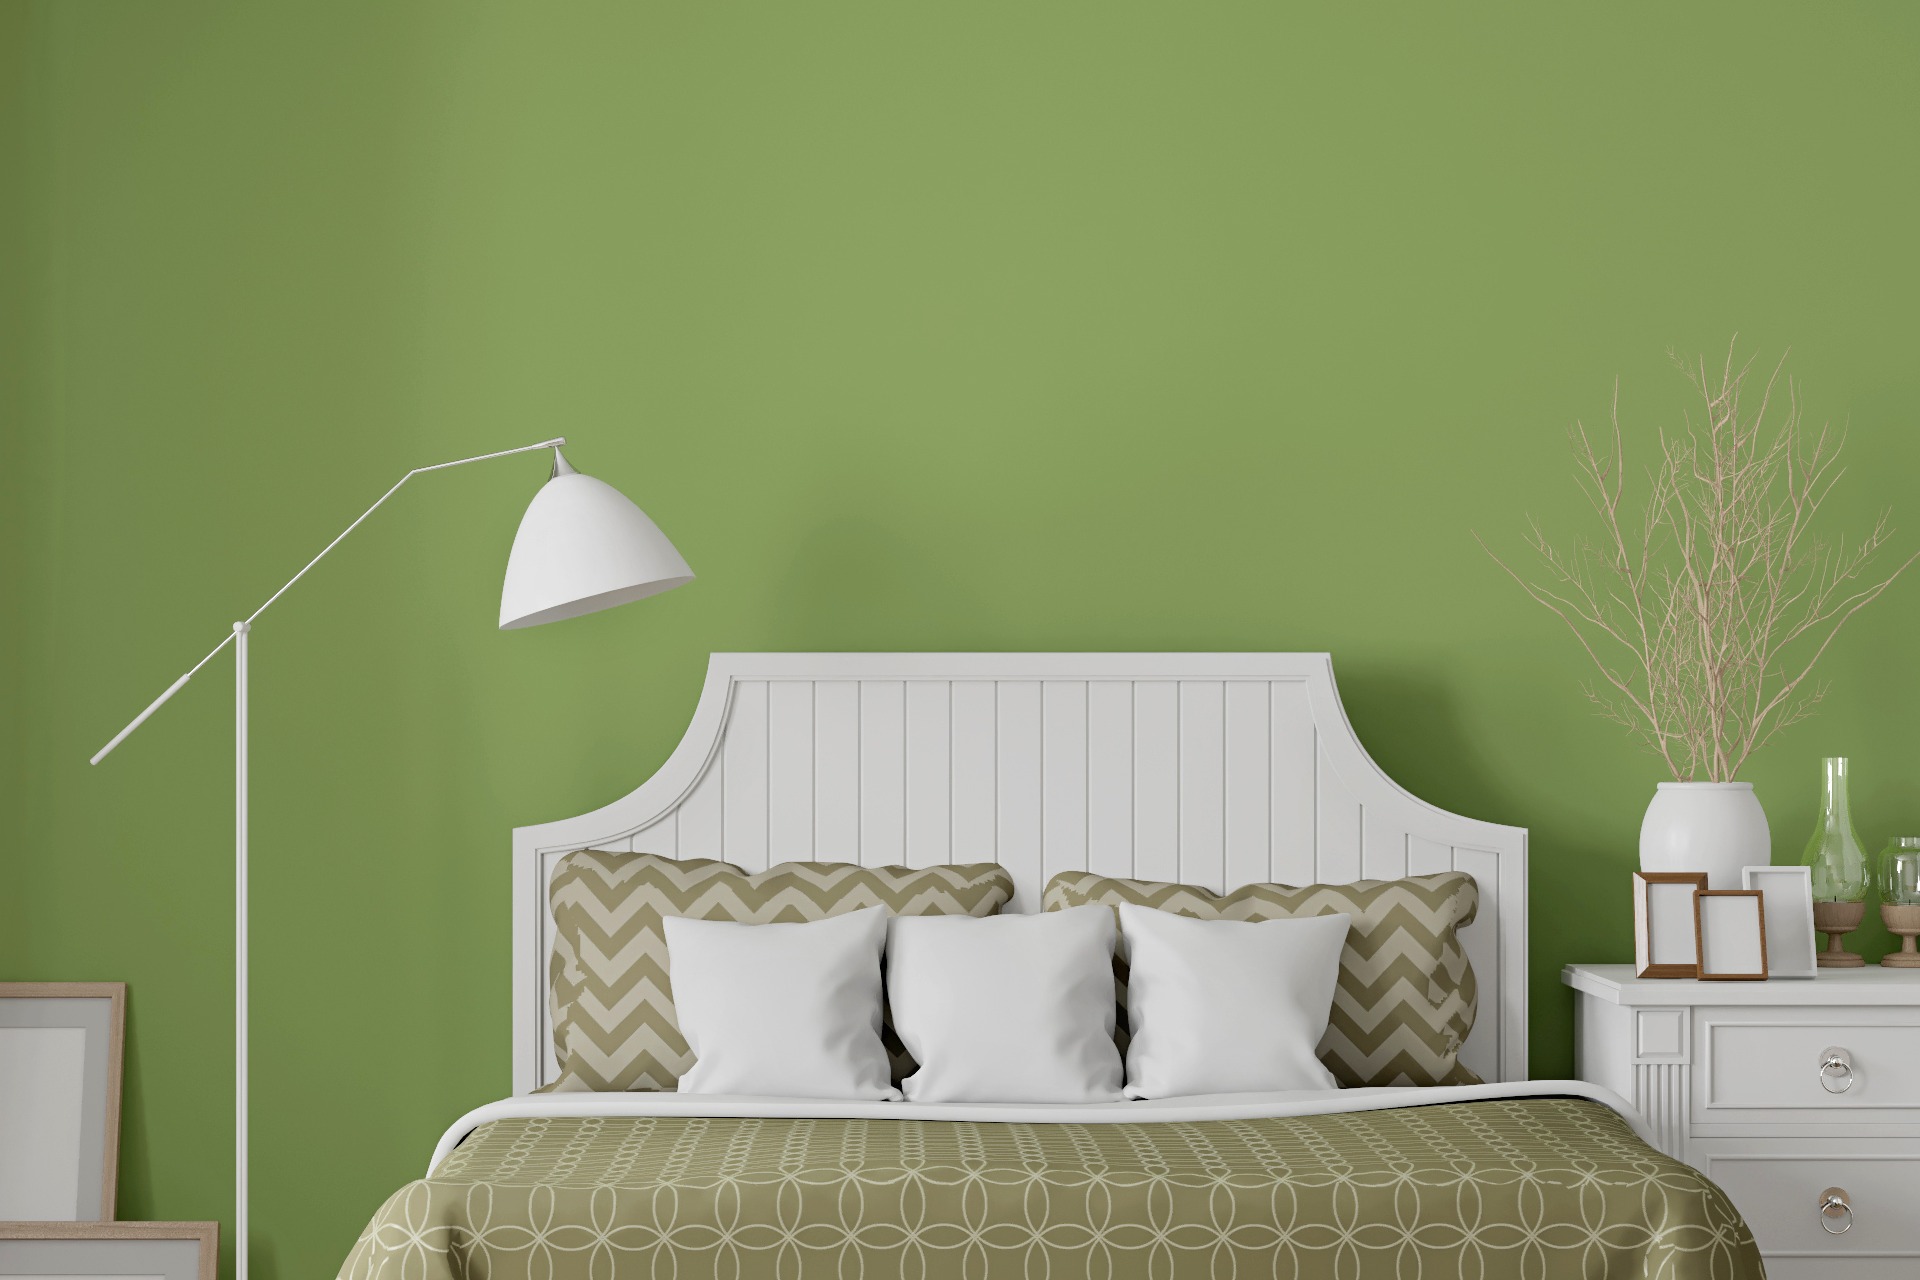 Lámpara al lado de una cama con cabecero blanco sobre una pared verde claro